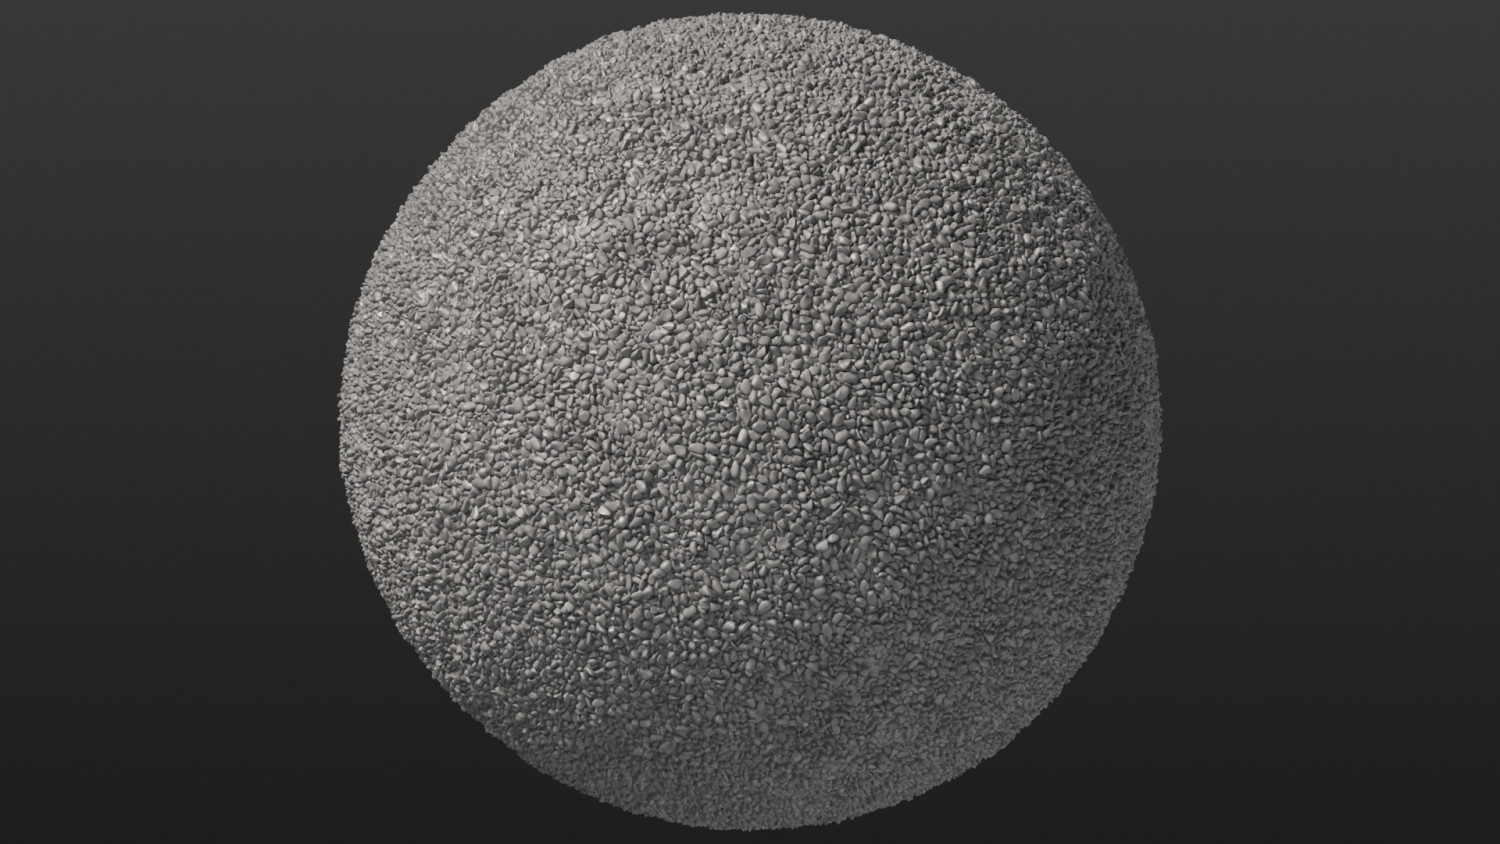 Fine even gravel surface texture